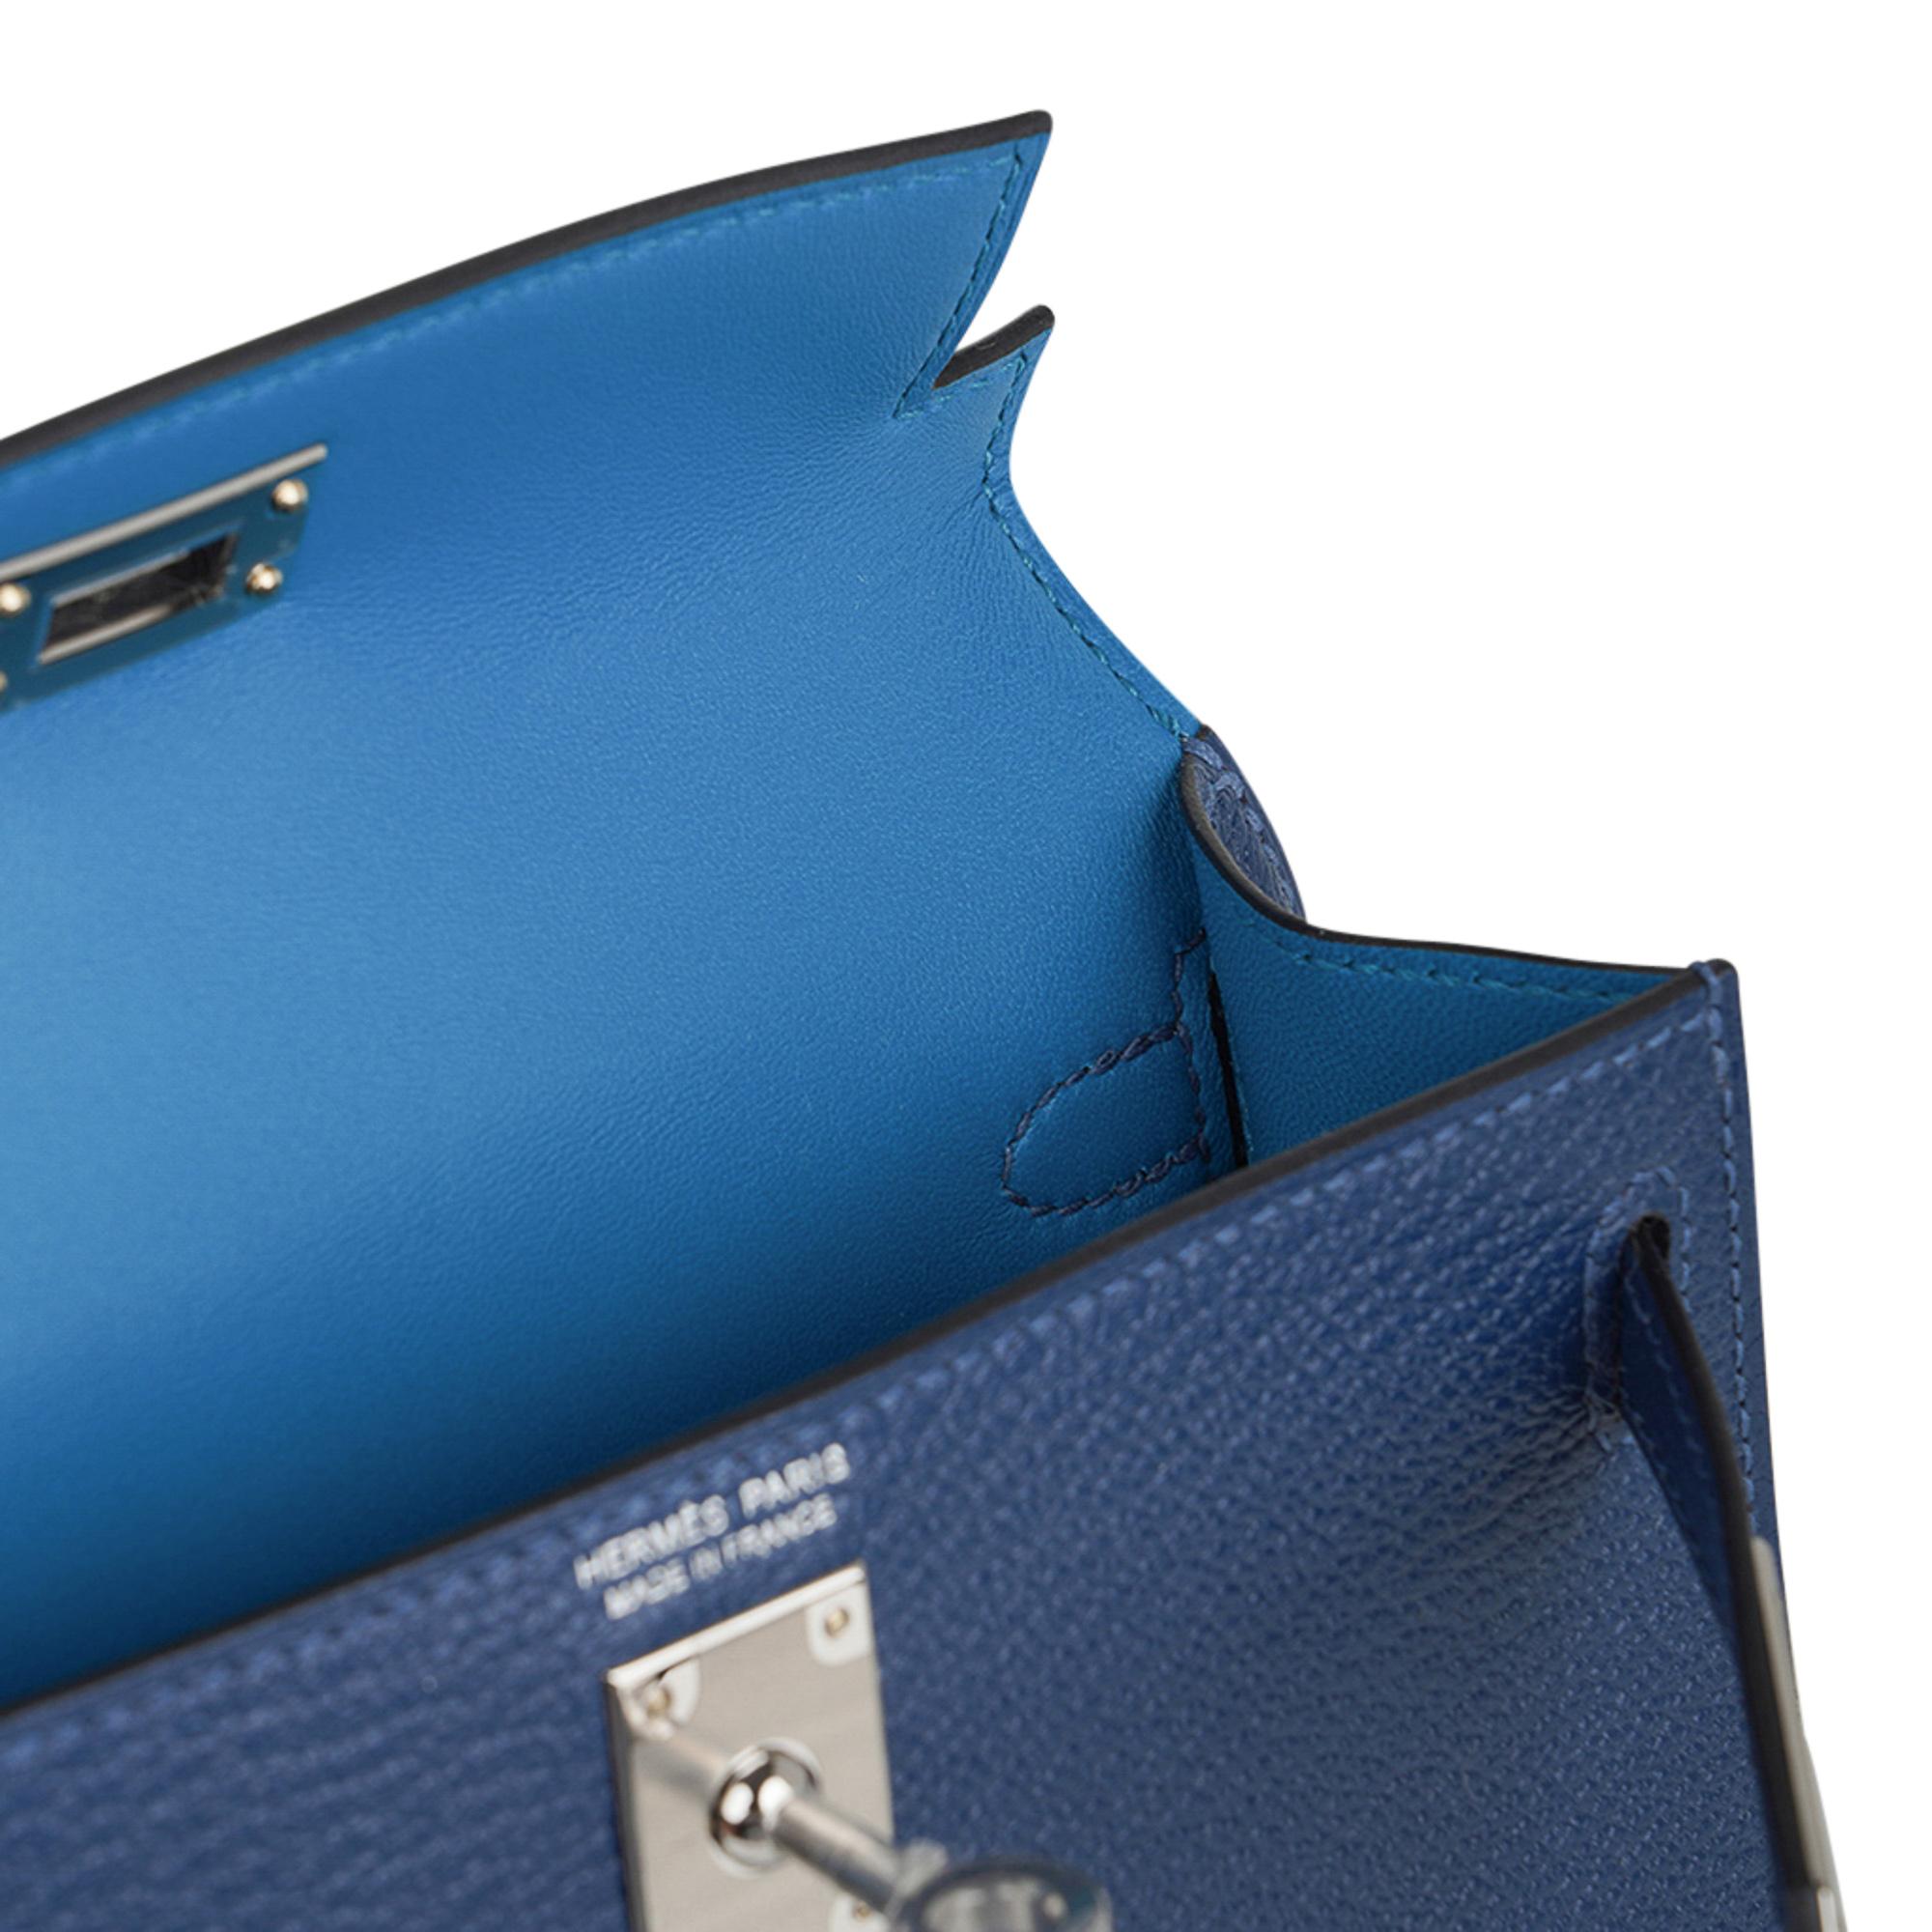 Mightychic propose un sac Hermes Kelly Verso 20 Mini Sellier en bleu profond et bleu Izmir.  à l'intérieur.
Cuir Espom rehaussé d'une quincaillerie Palladium.
Livré avec son écrin Hermès, sa bandoulière et sa couchette.
Veuillez consulter la vaste